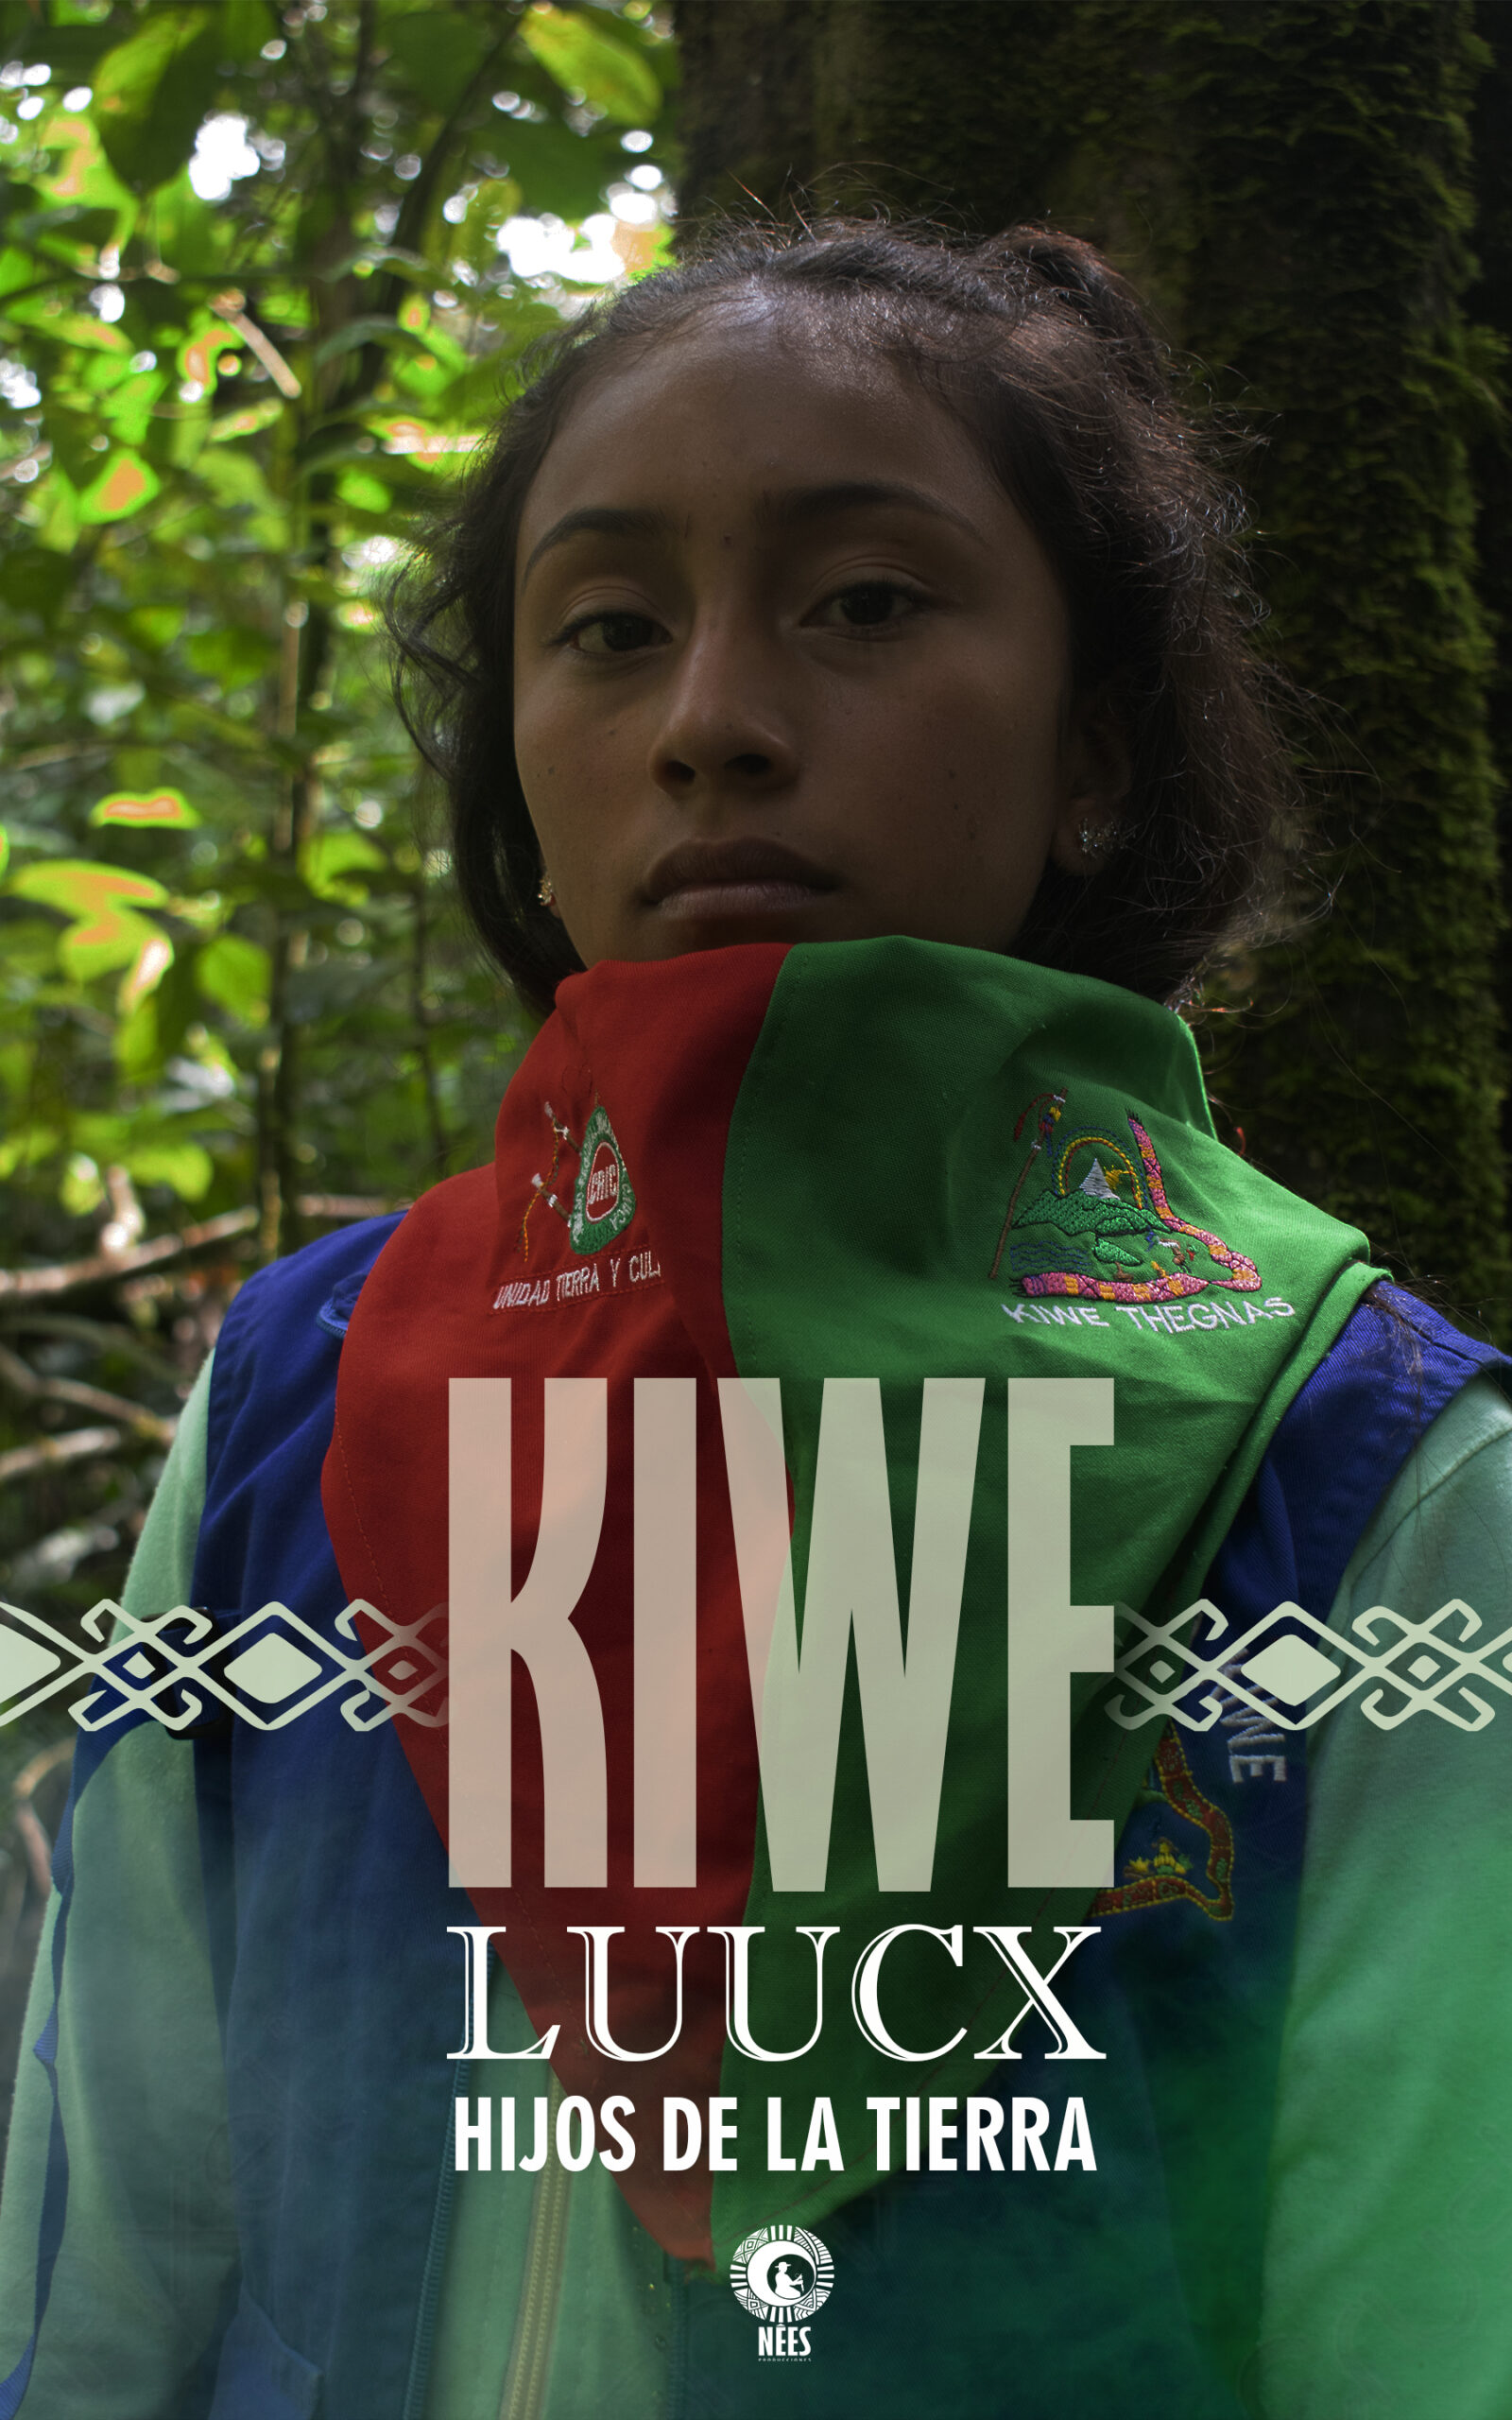 Kiwe Luucx -Resistiendo al conflicto